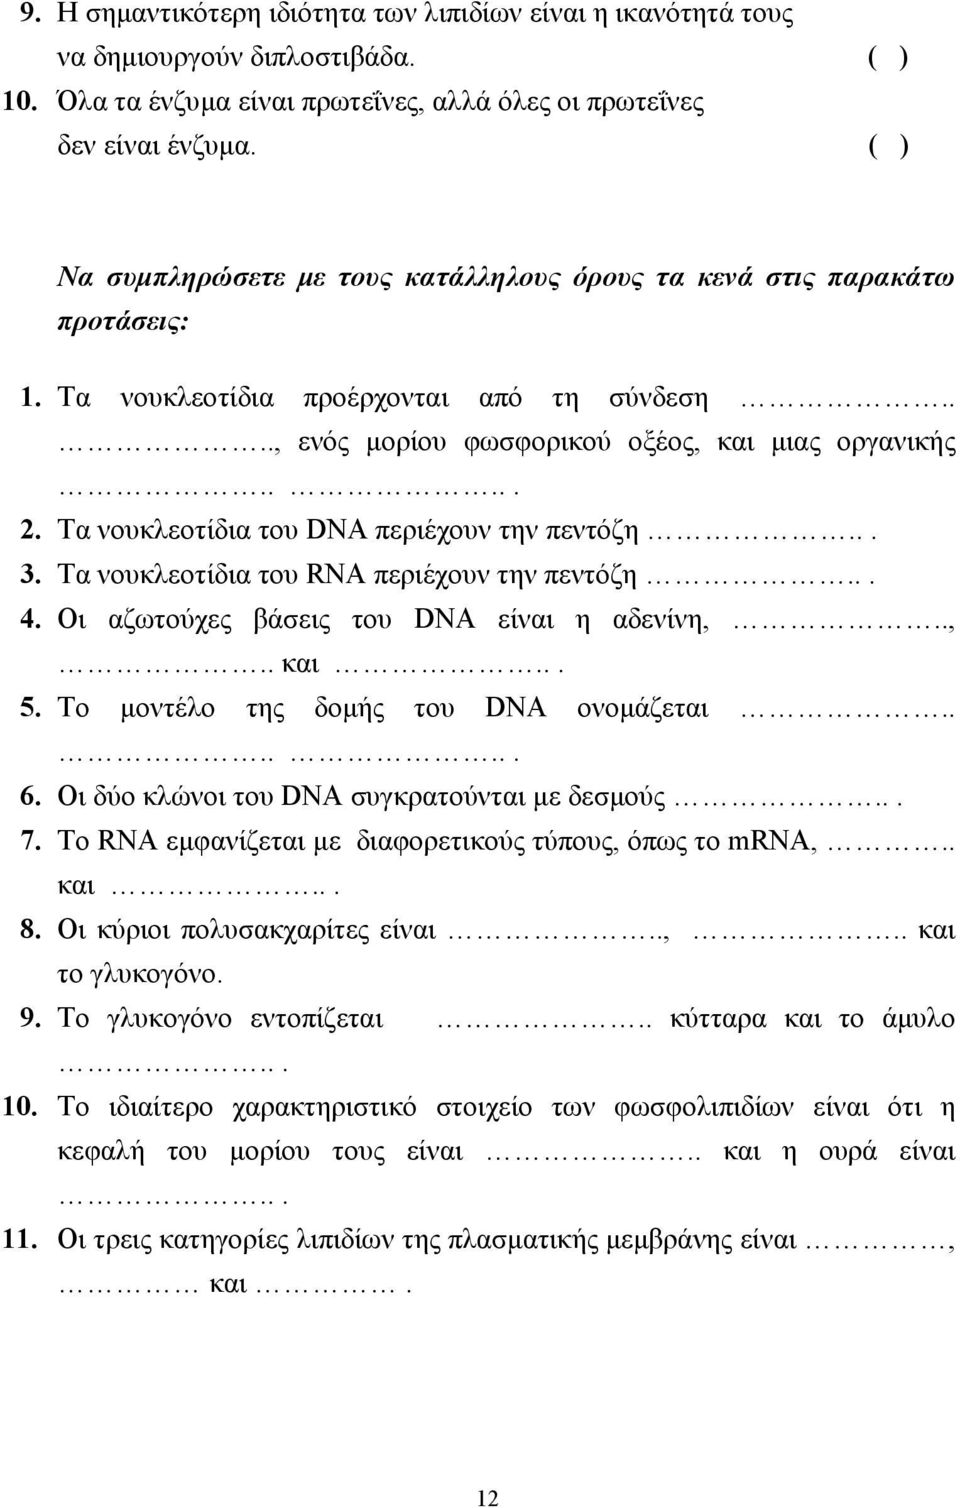 Τα νουκλεοτίδια του DNA περιέχουν την πεντόζη... 3. Τα νουκλεοτίδια του RNA περιέχουν την πεντόζη... 4. Οι αζωτούχες βάσεις του DNA είναι η αδενίνη,..,.. και... 5.